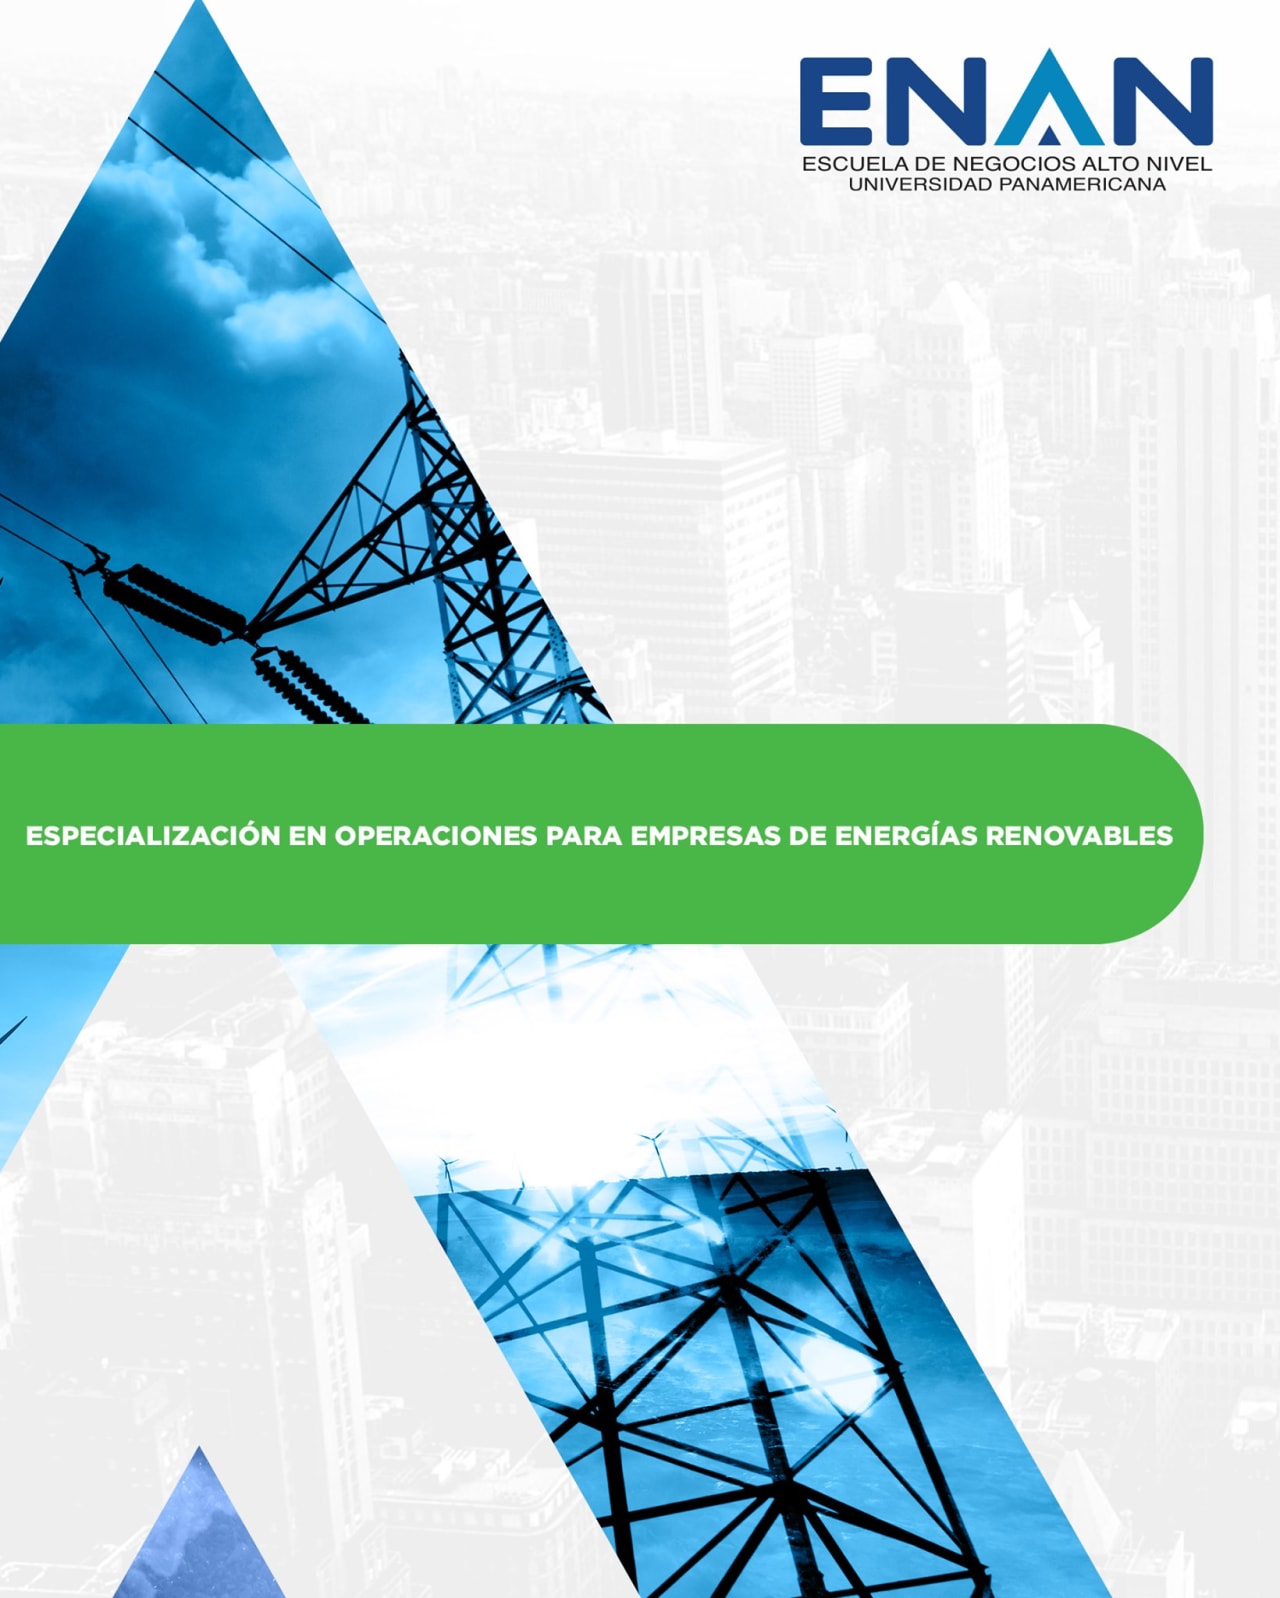 Escuela de Negocios Alto Nivel - Universidad Panamericana de Guatemala Specialization in Operations for Renewable Energy Companies